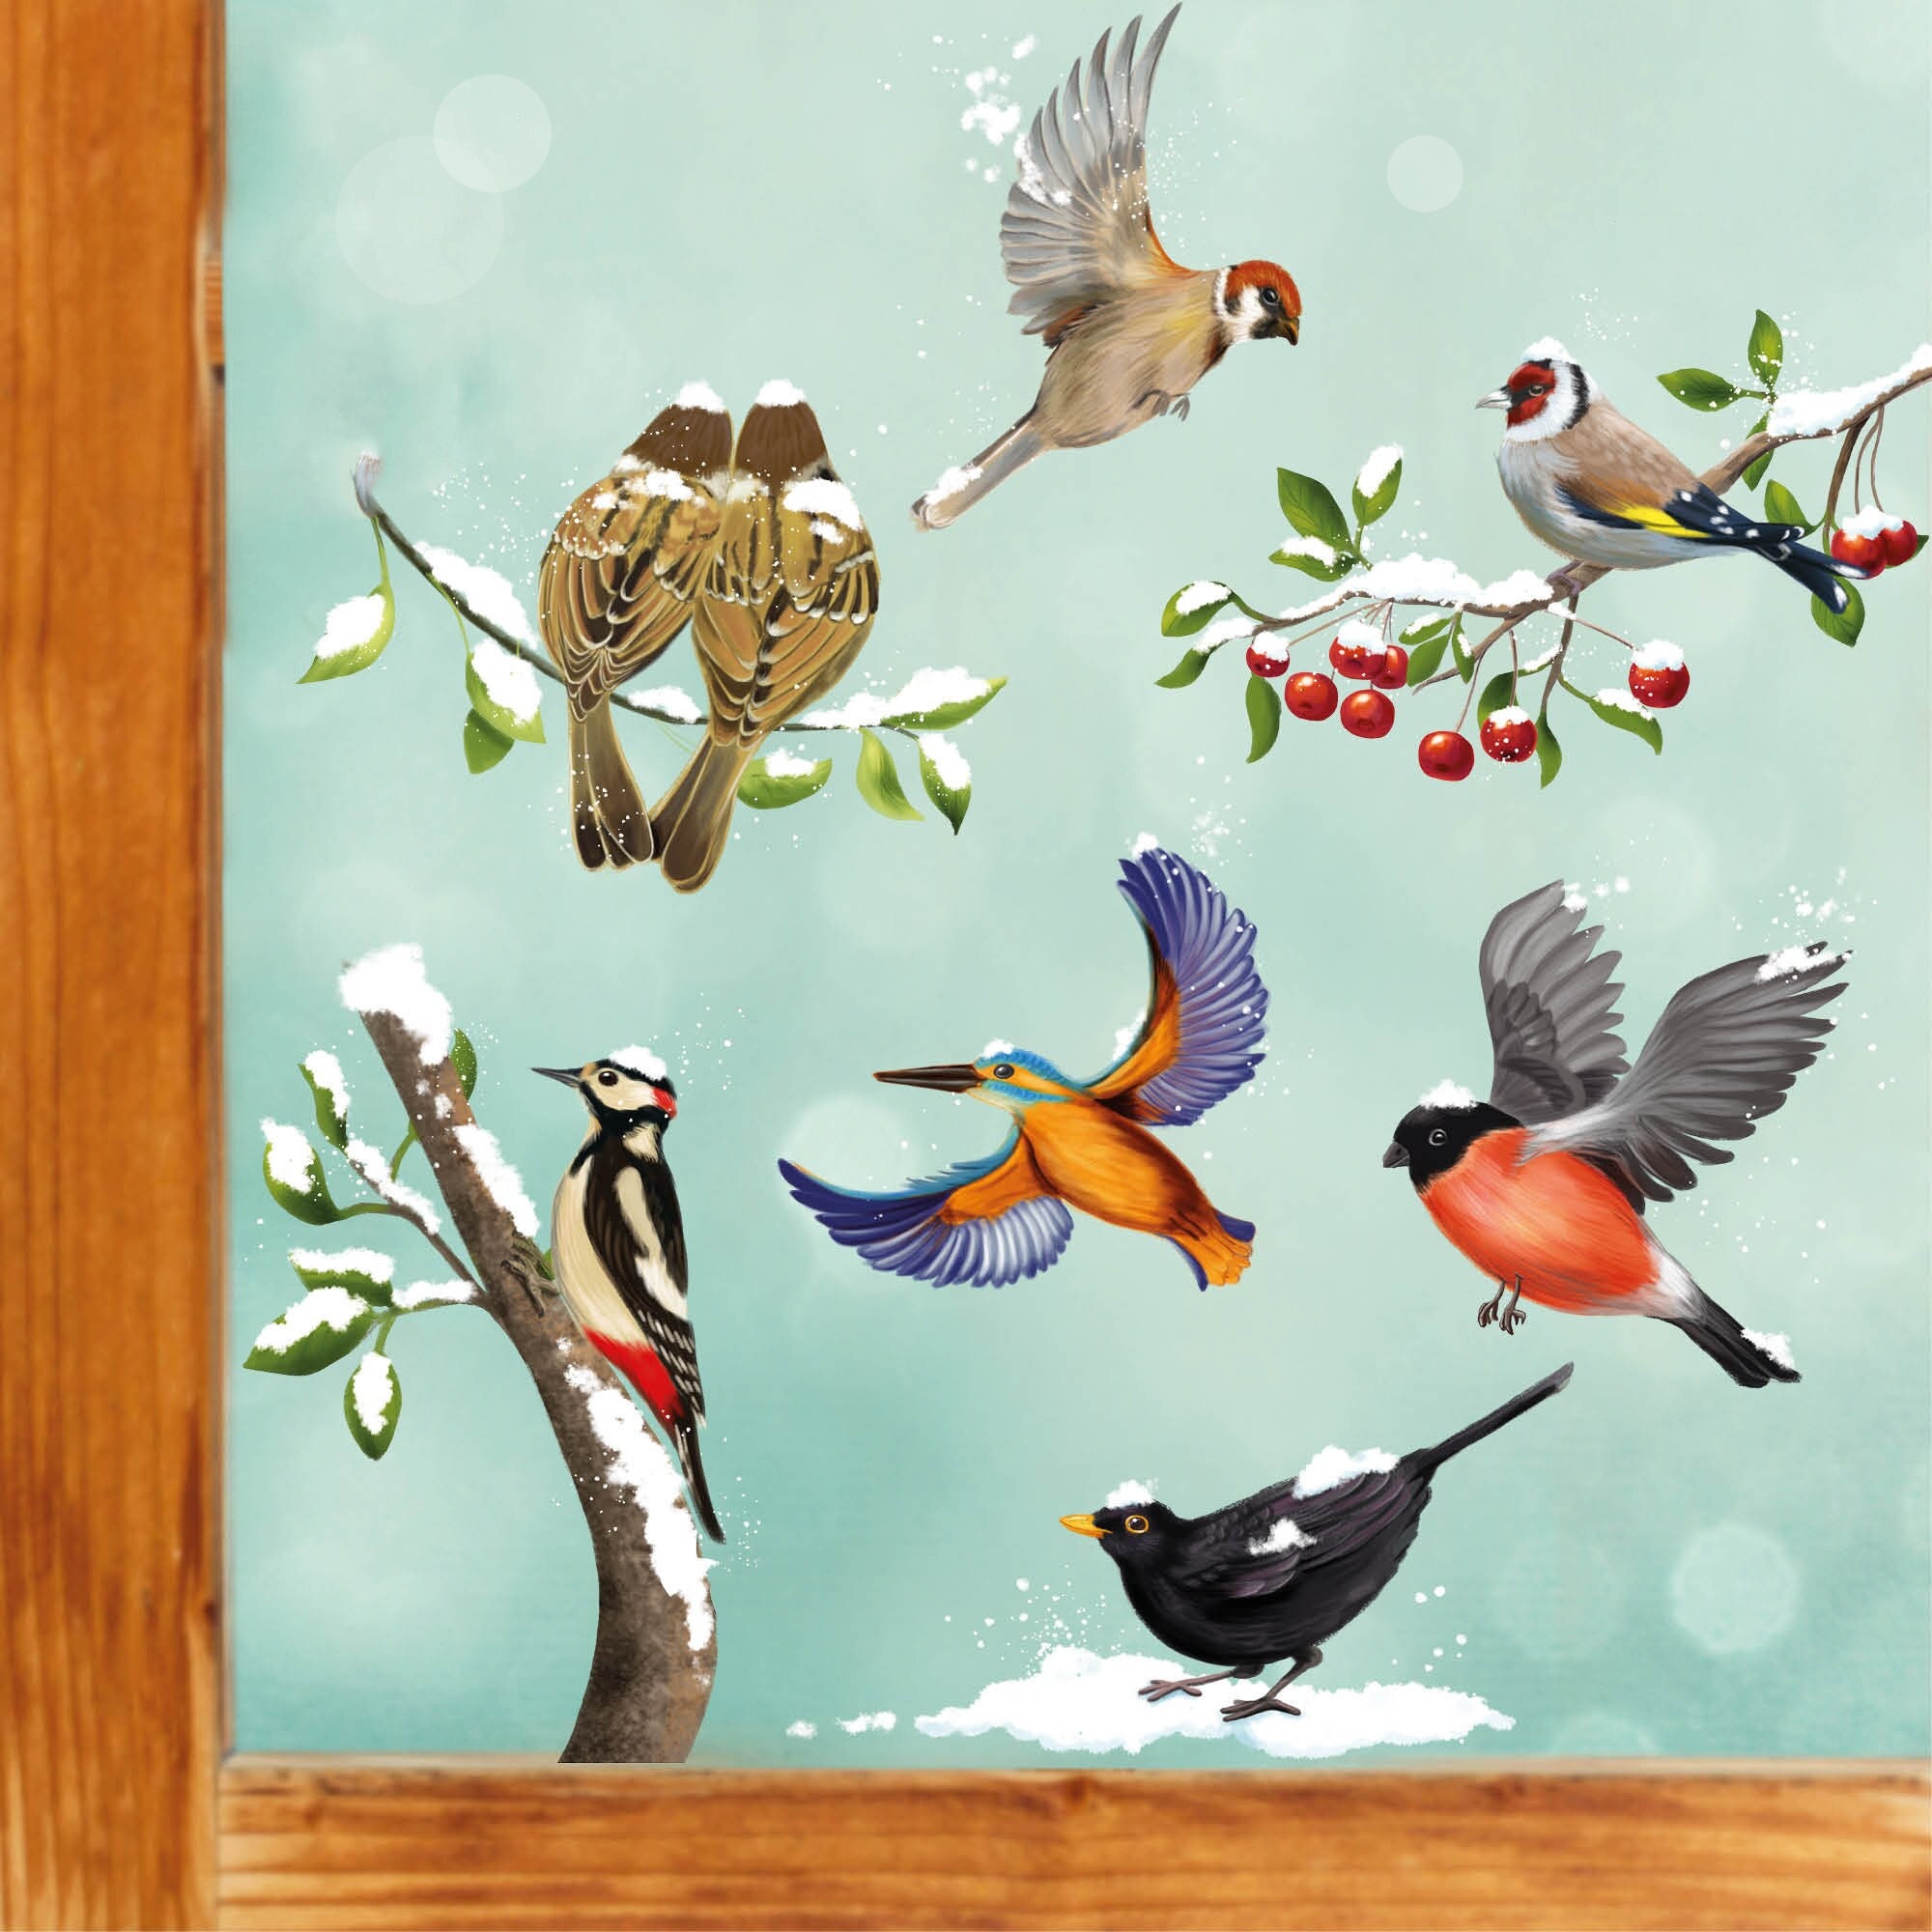 Fensterbild Weihnachten Winter Vögel Set mit Schnee, Fensterdeko winterlich, Adventsdeko